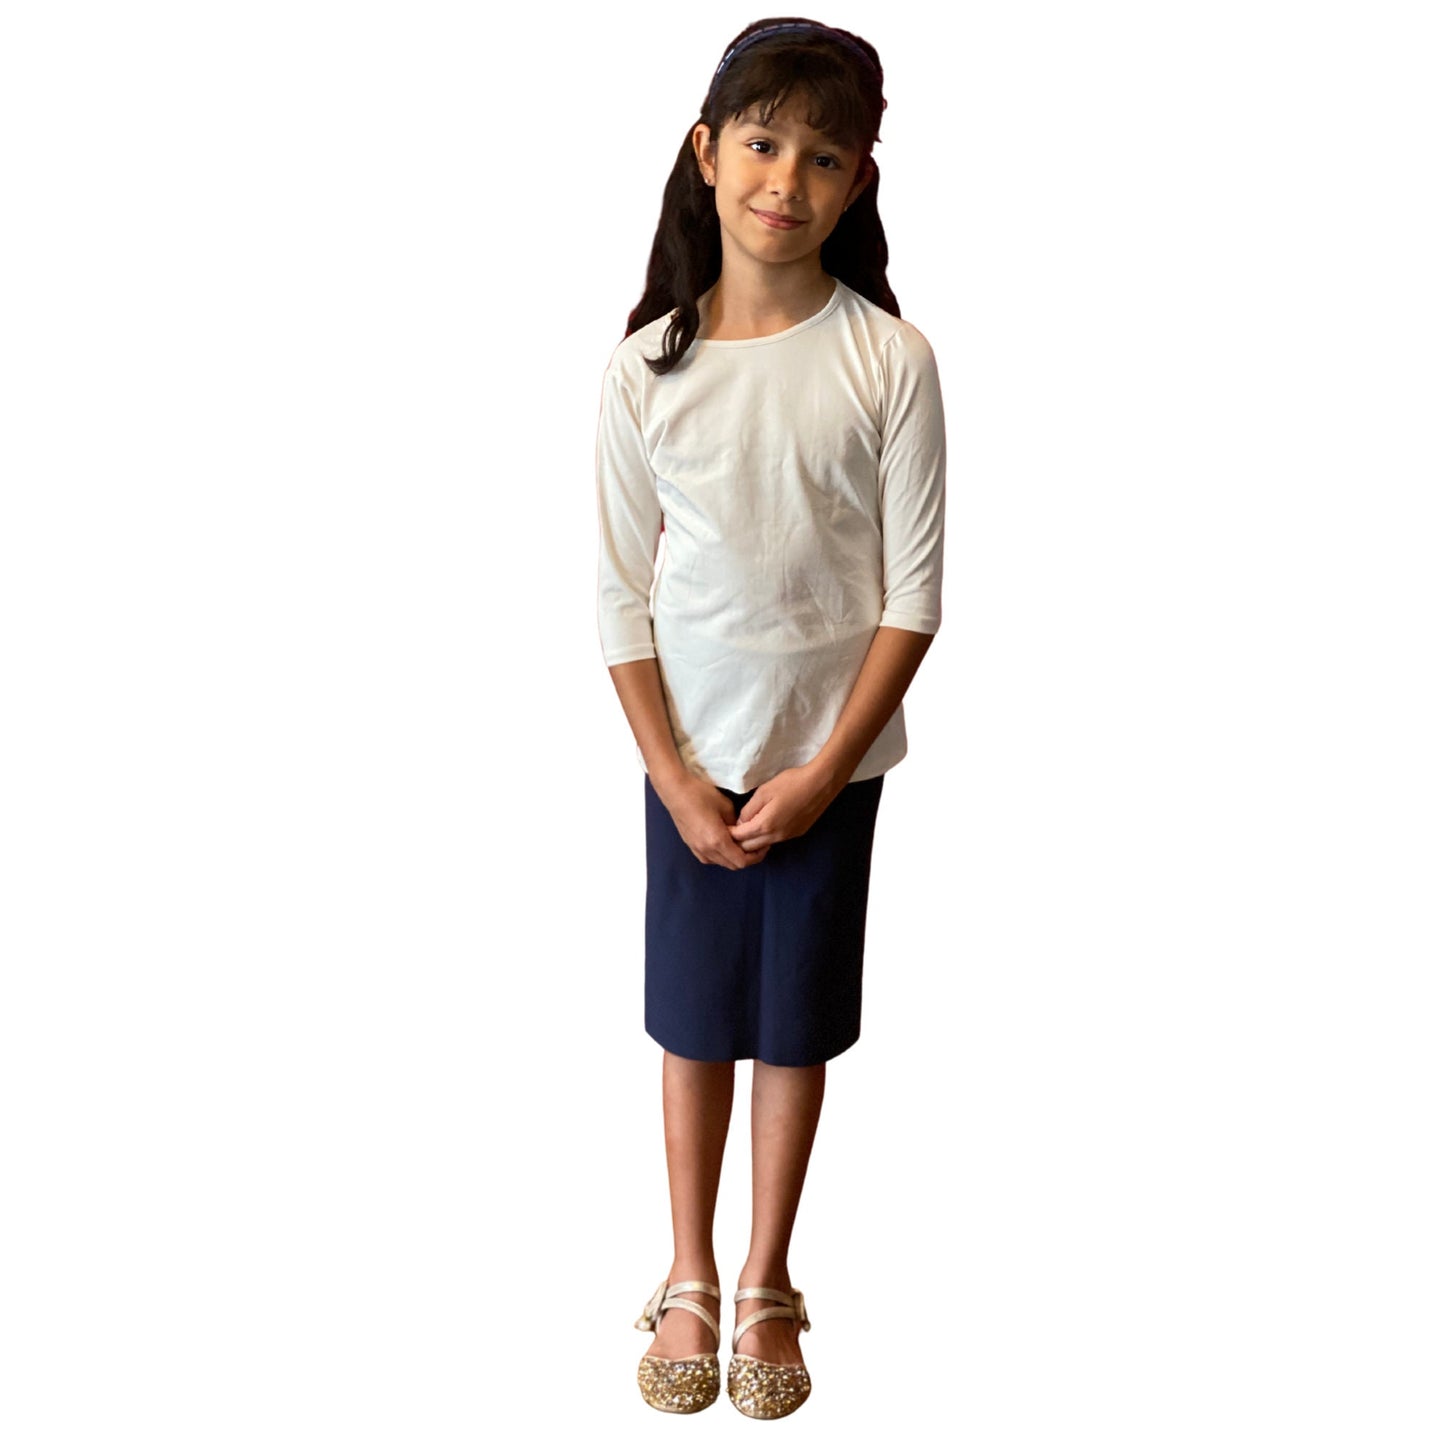 Girl Navy Blue Thick Skirt / Modest Skirt Knee Length Skirt / Tznius clothes/ Skirt for School Uniform Skirt / School Approved Uniform Skirt